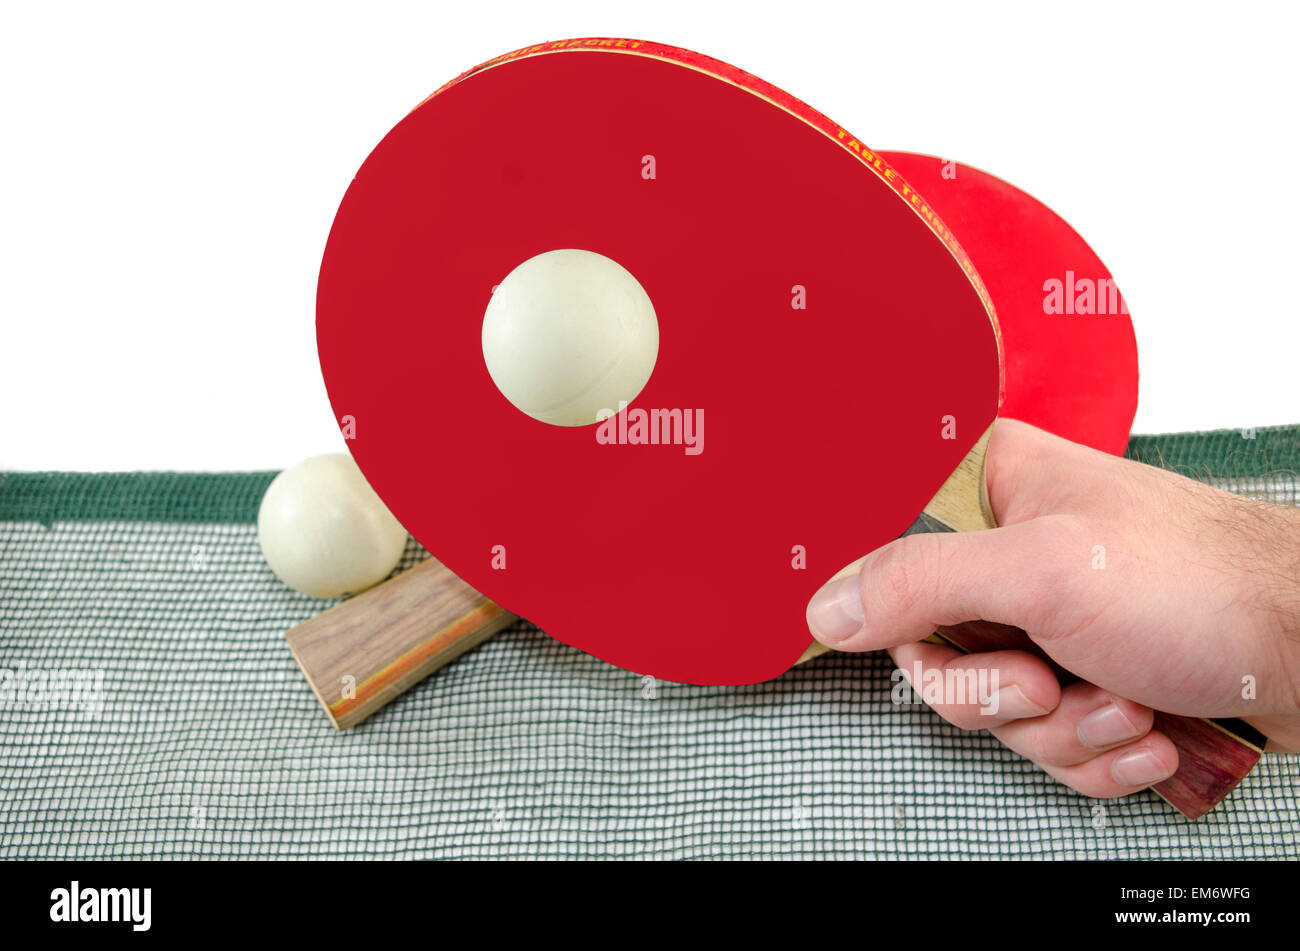 Homme main tenant une raquette de ping-pong et une balle de tennis de table au-dessus d'un filet, isolated on white Banque D'Images